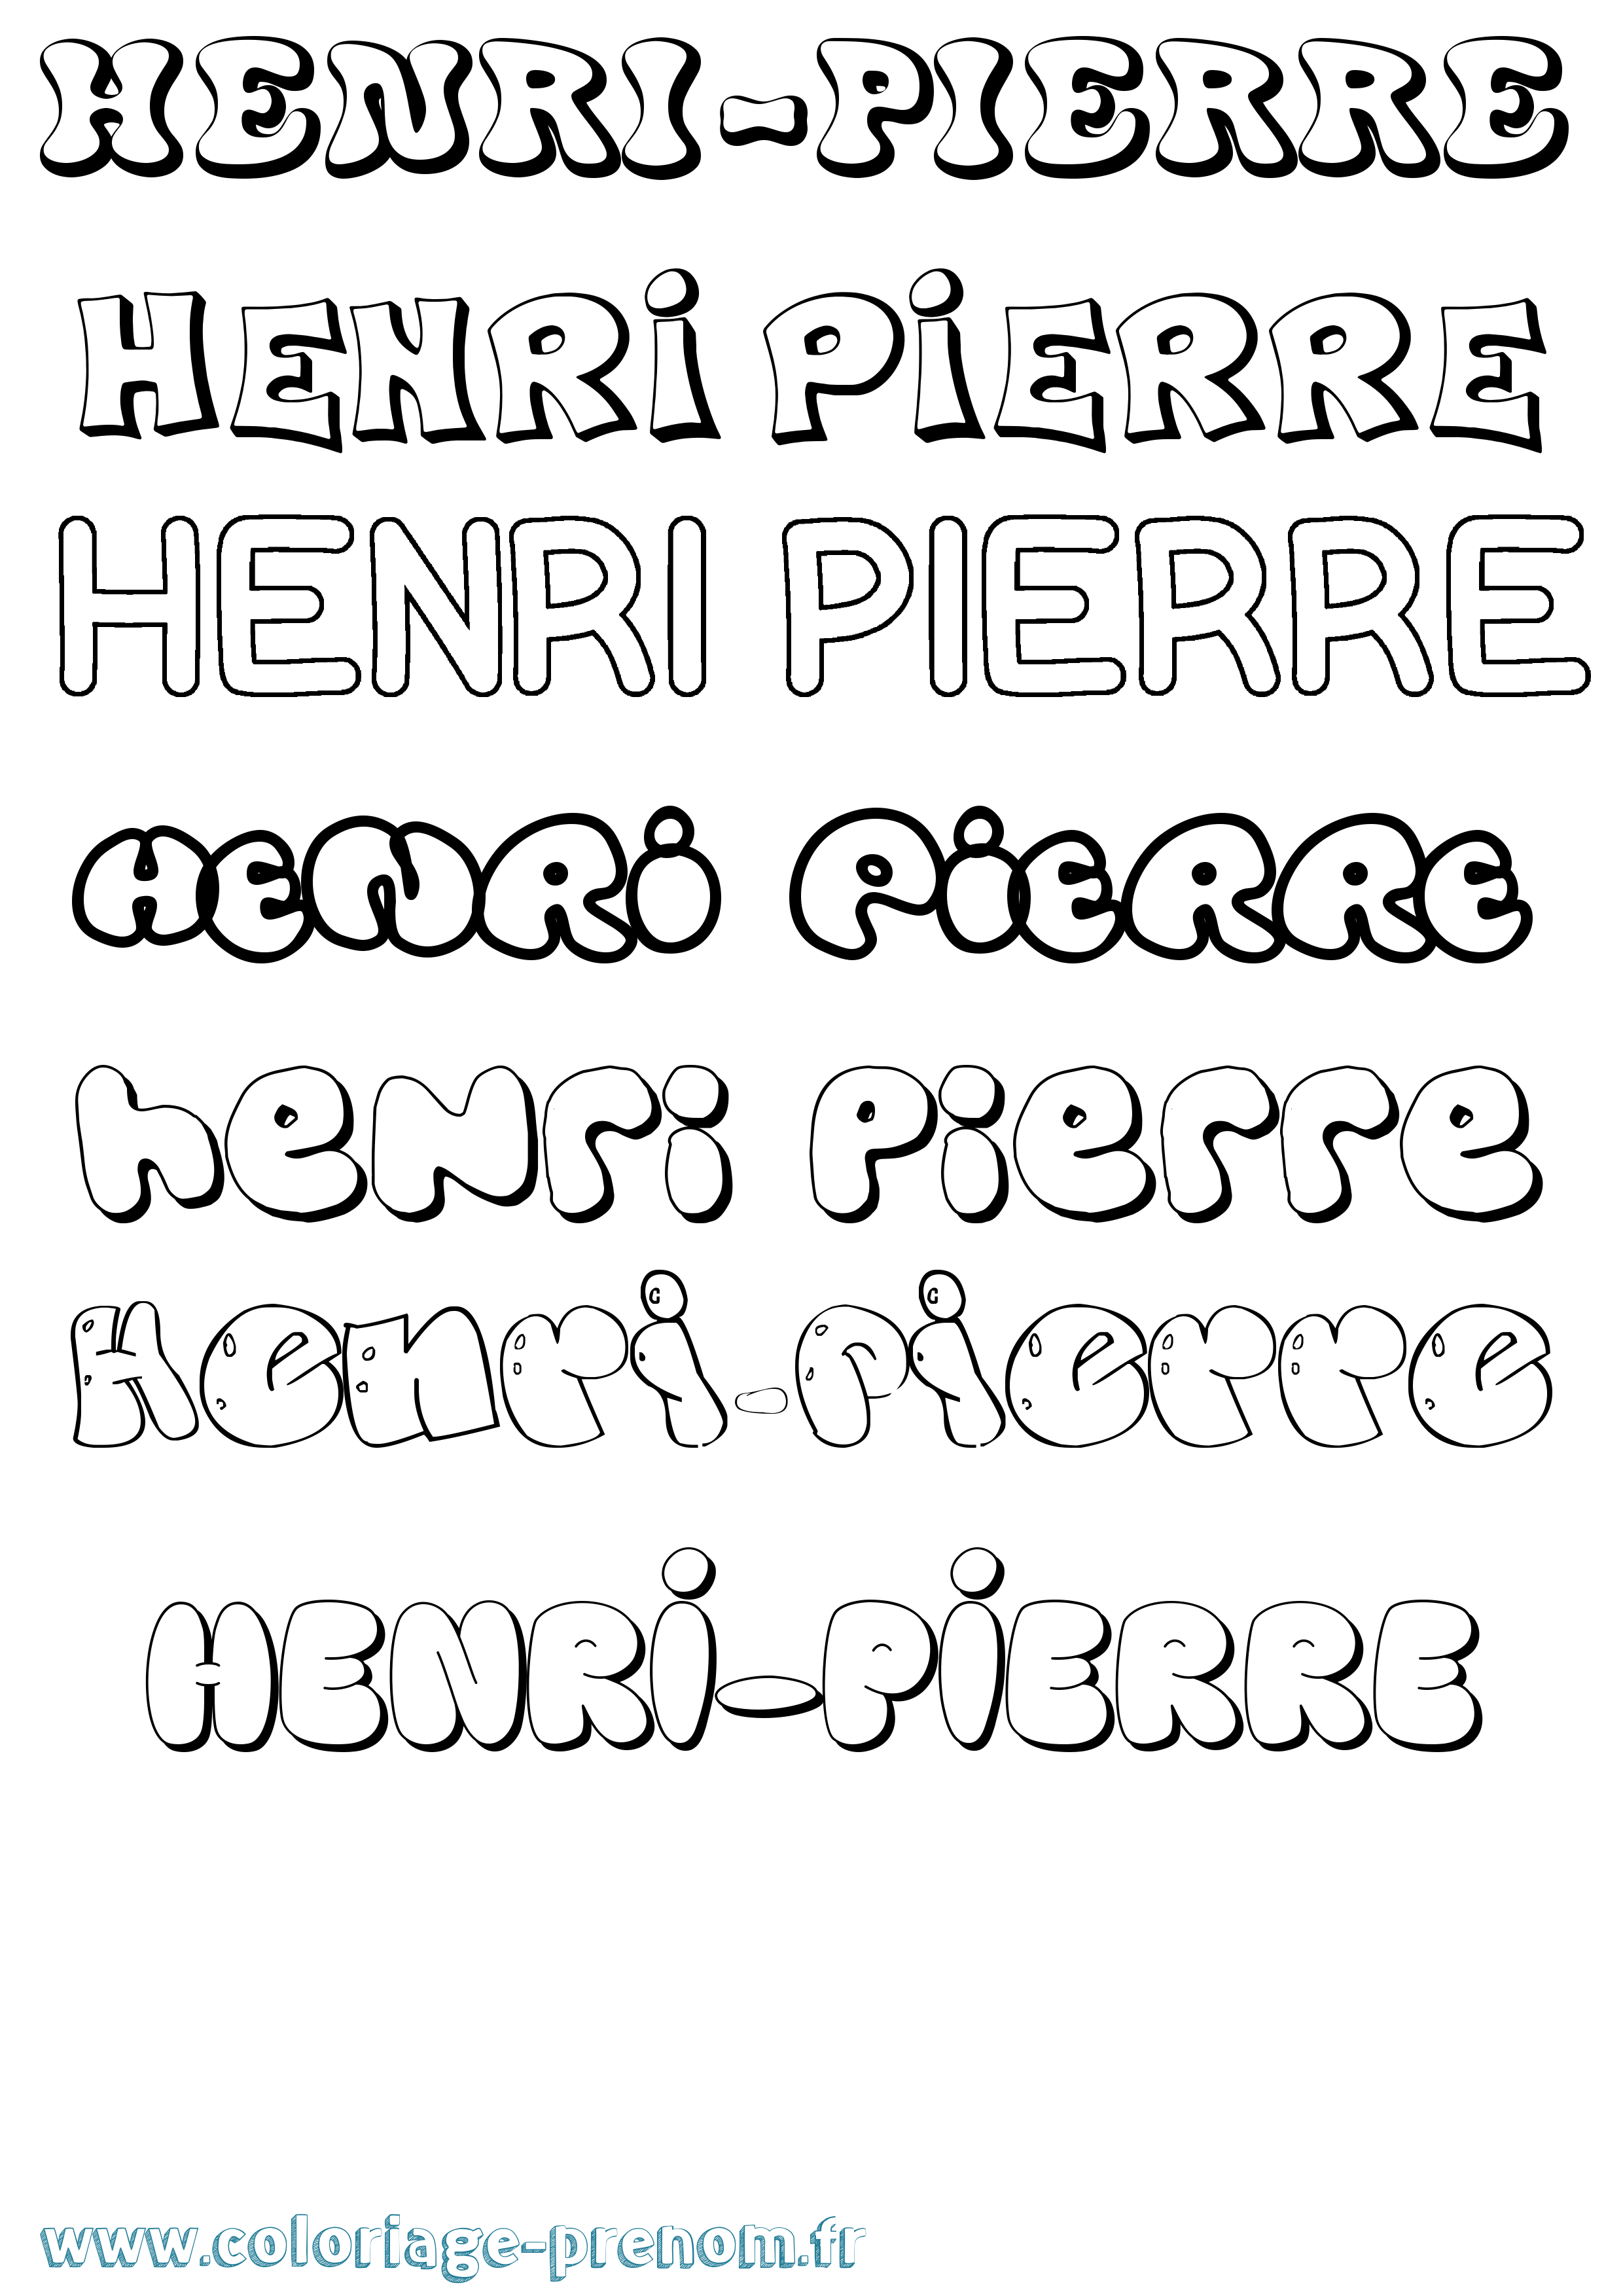 Coloriage prénom Henri-Pierre Bubble